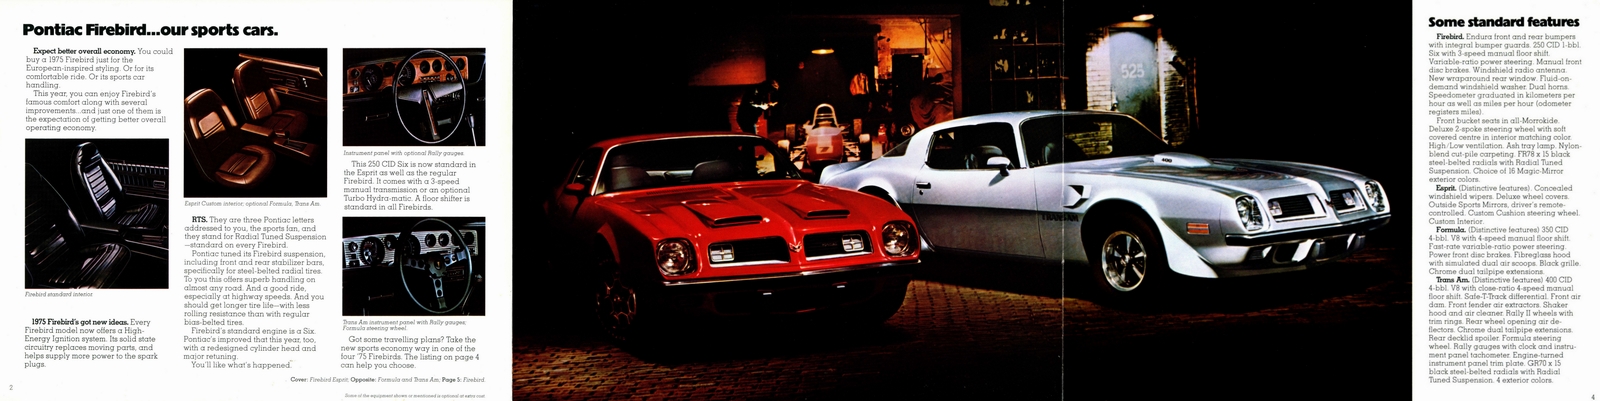 n_1975 Pontiac Firebird (Cdn)-Side B.jpg